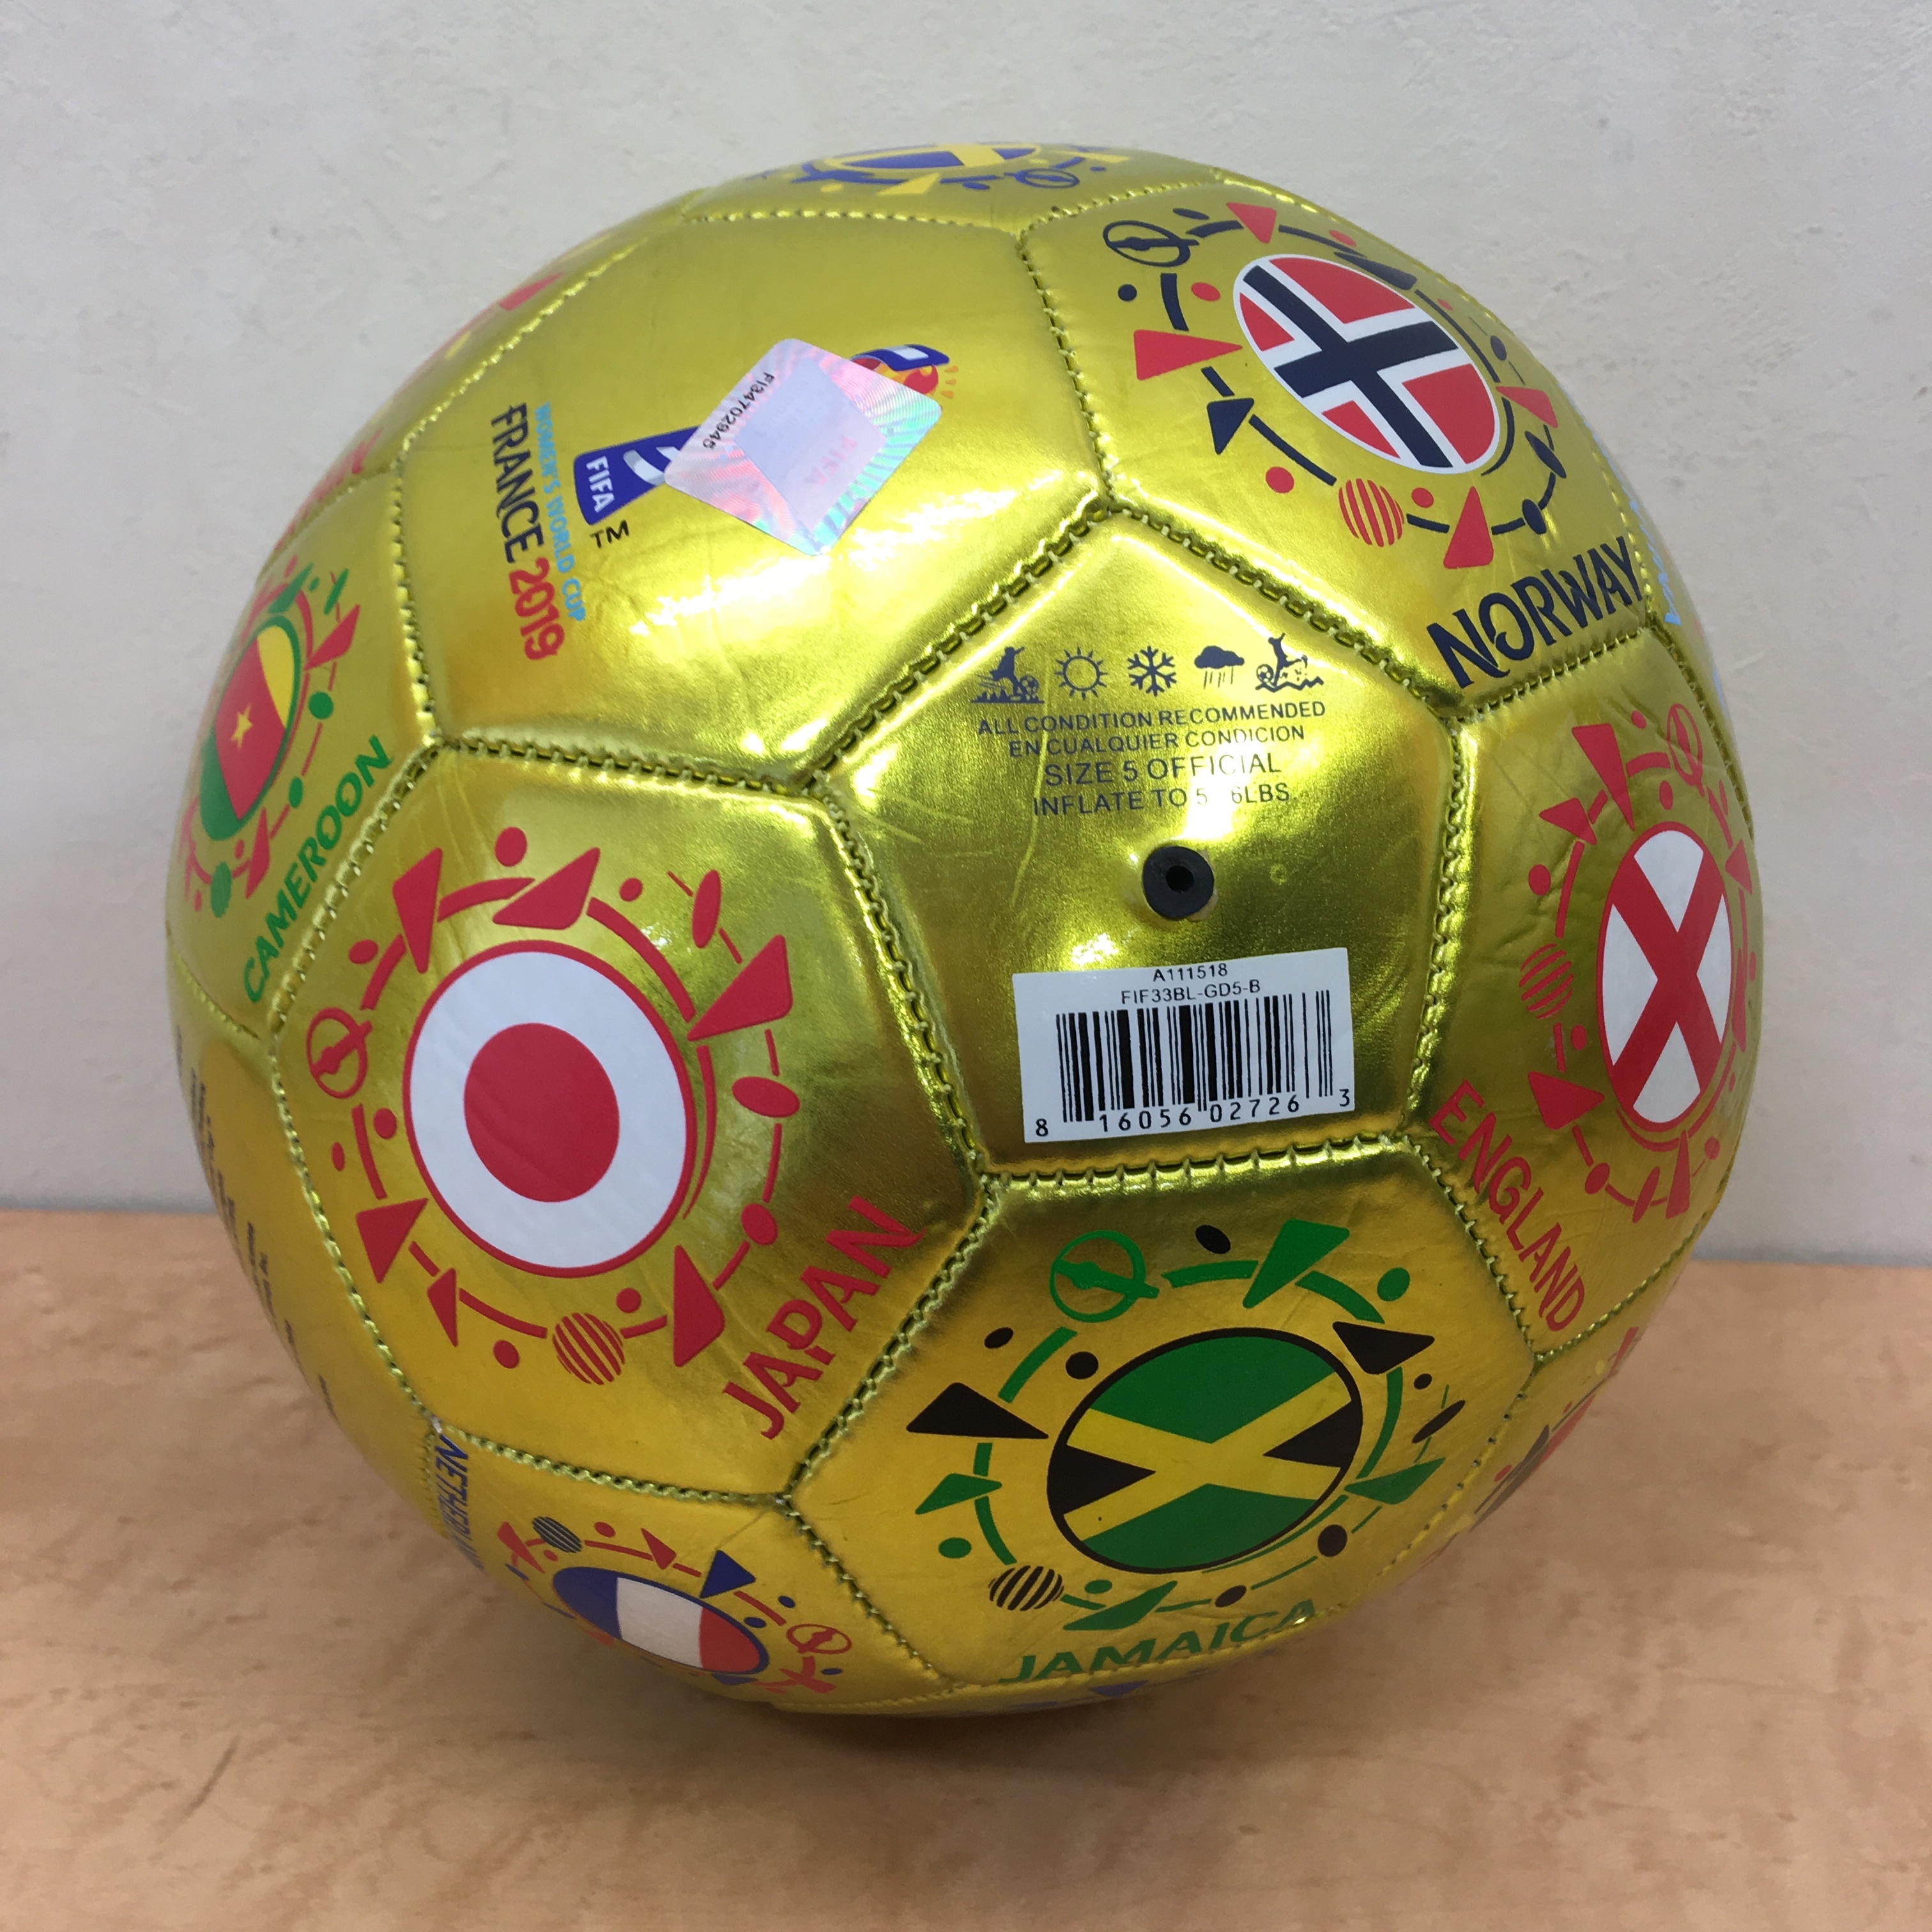 Fifa 女子ワールドカップ フランス 19 公式記念サッカーボール なでしこジャパン Freak スポーツウェア通販 海外ブランド 日本国内未入荷 海外直輸入